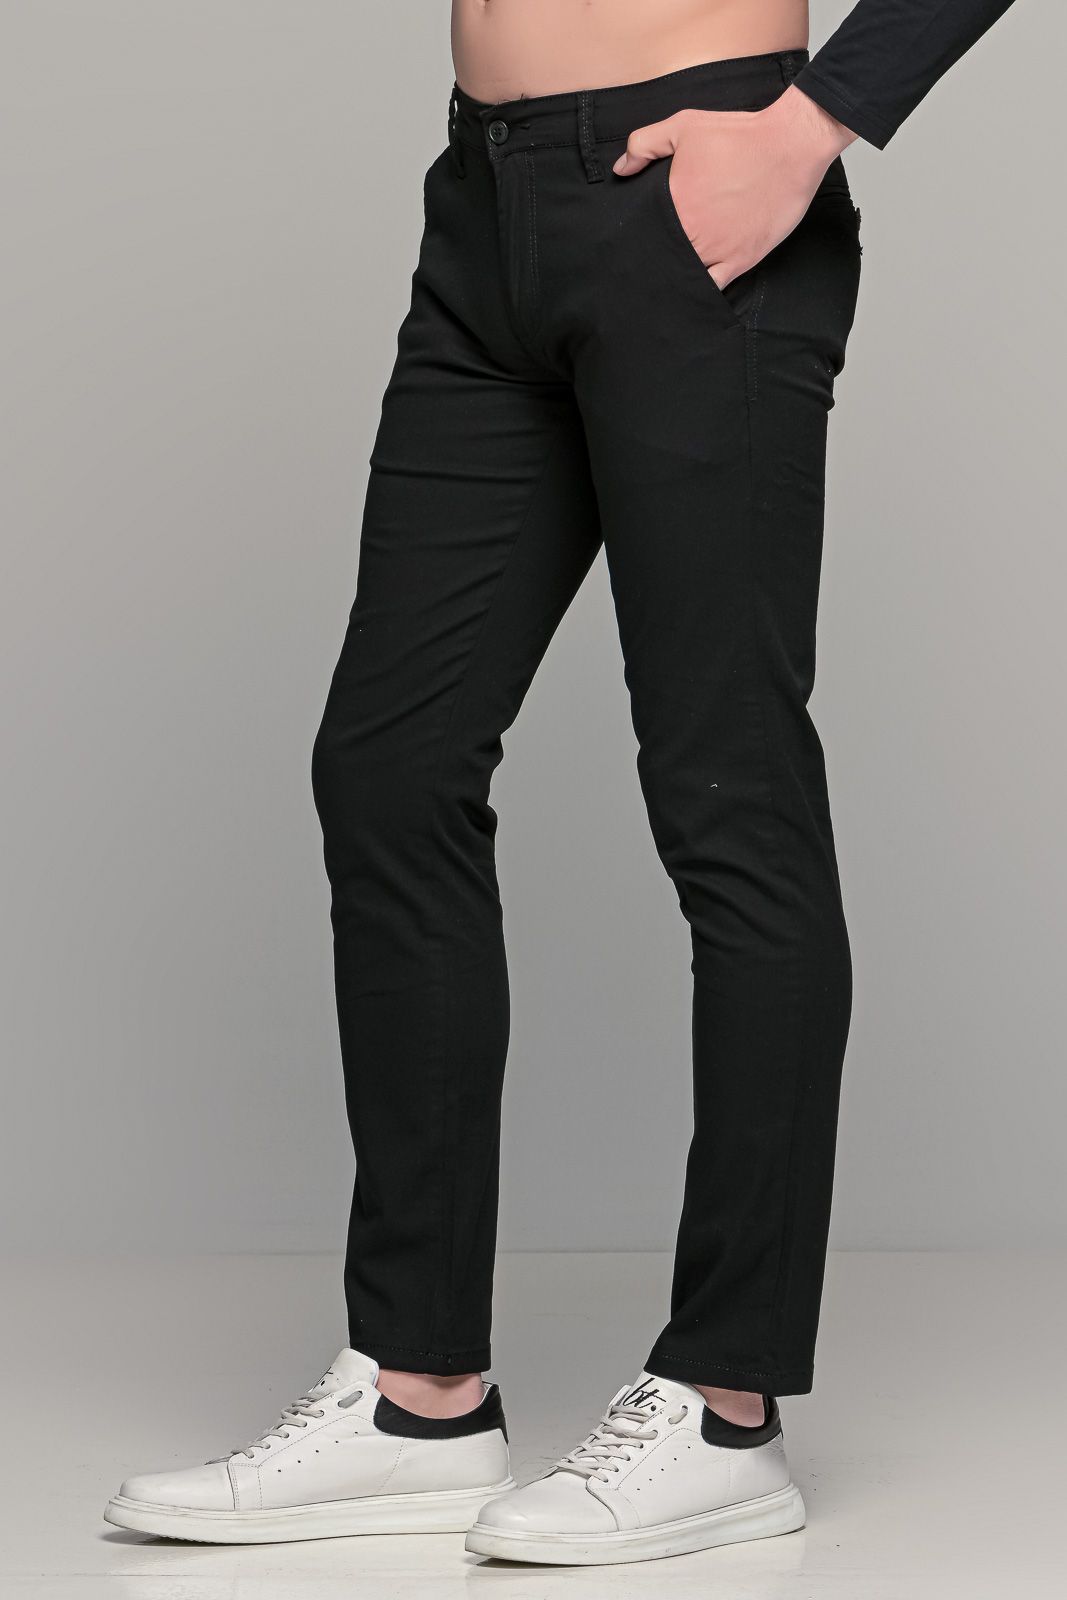 Καλοκαιρινό ανδρικό chino παντελόνι MASSARO μαύρο - Slim fit